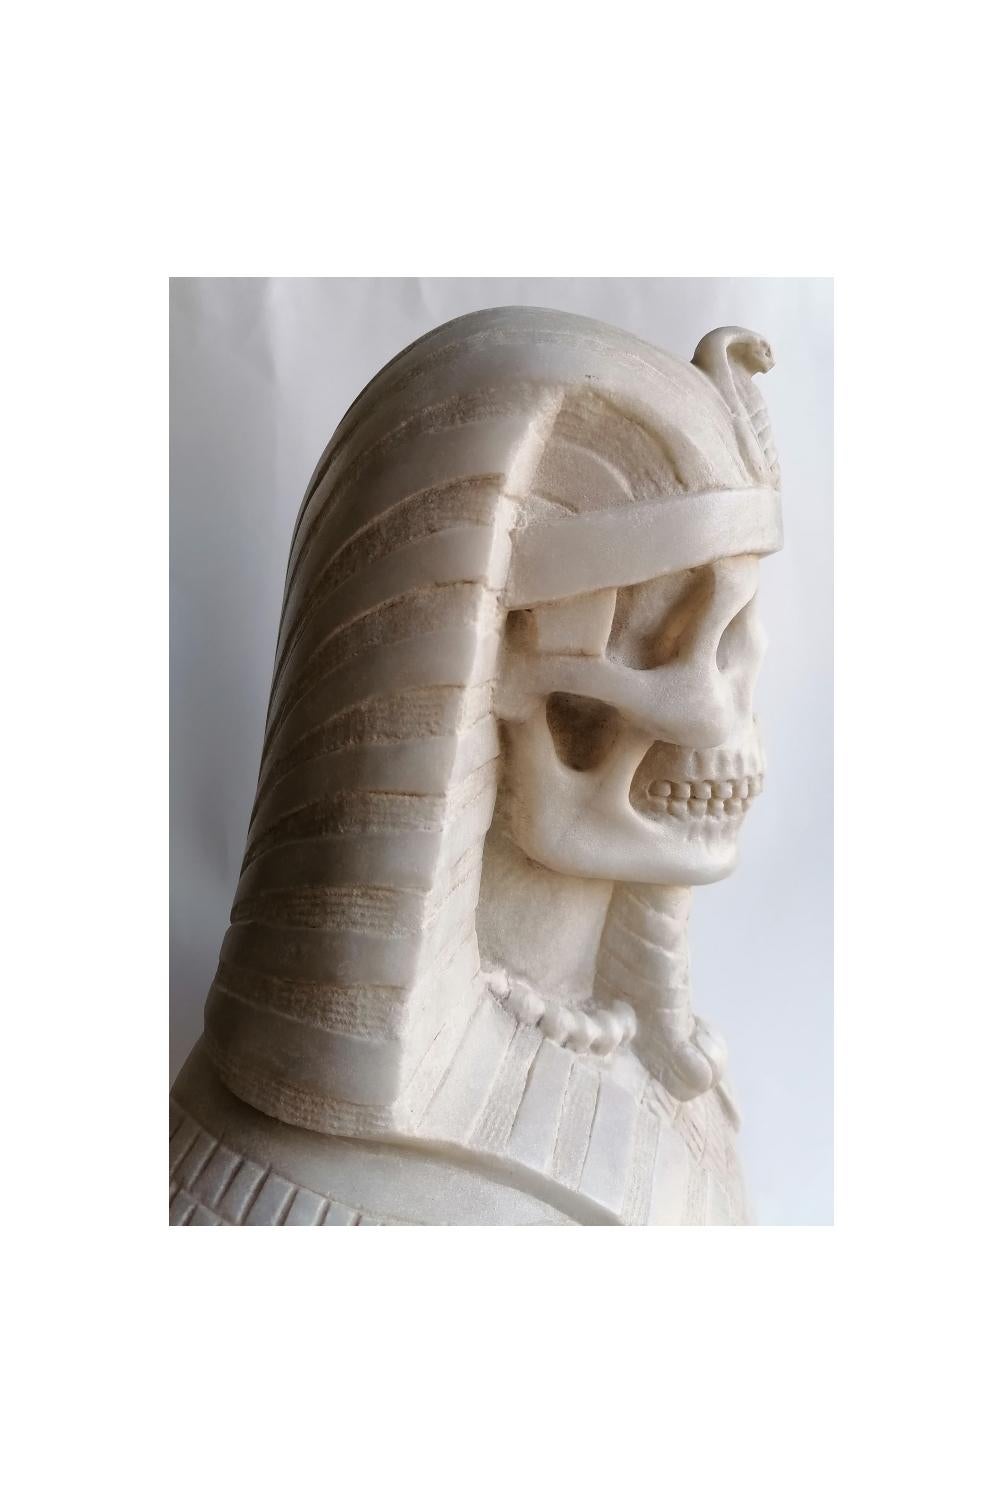 Classical Roman Busto di faraone egizio, (memento- vanitas ) scolpito su marmo bianco di Carrara For Sale